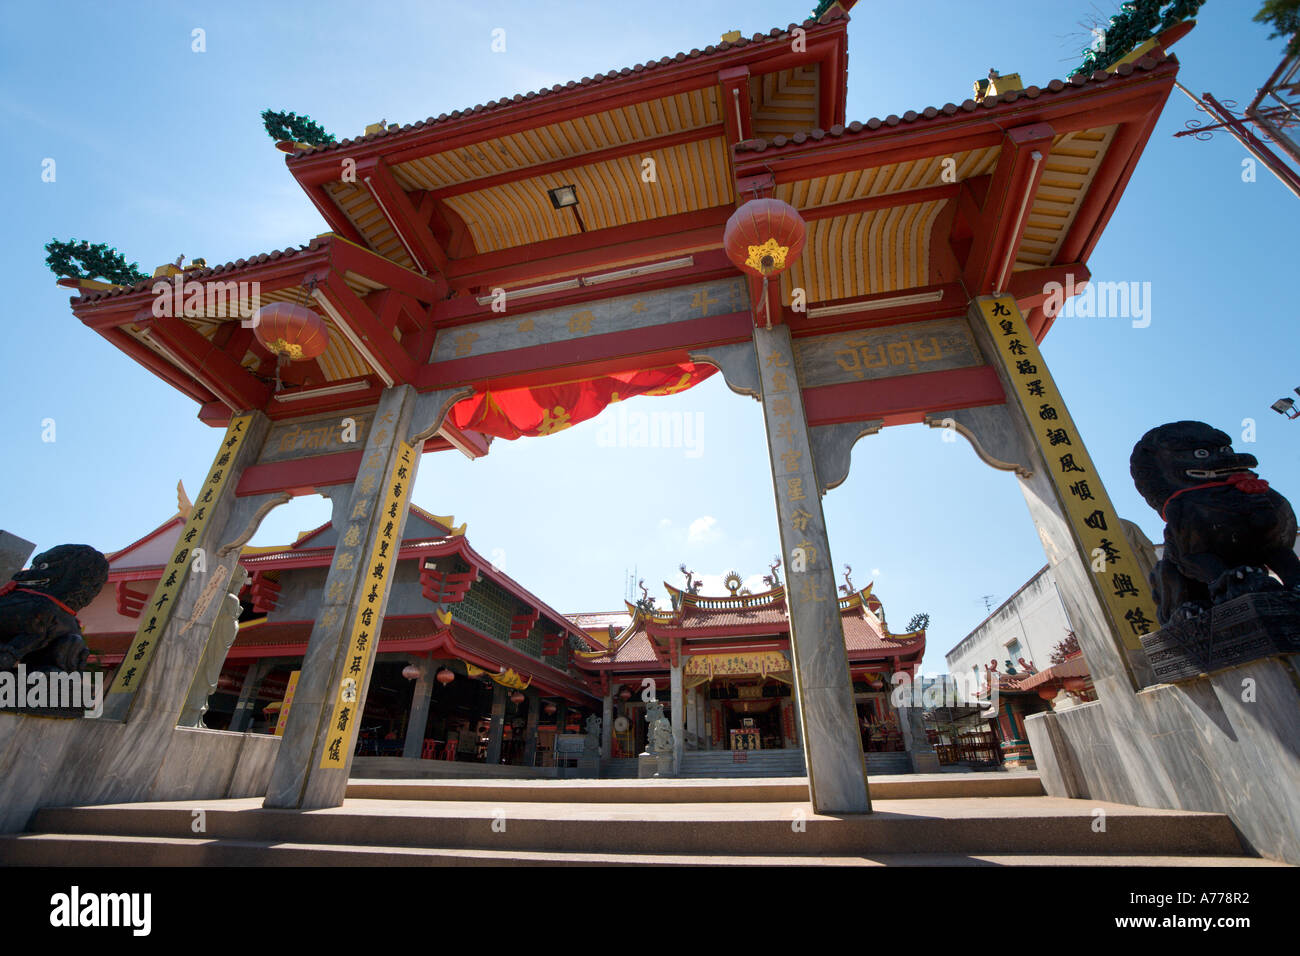 Entrée de Temple chinois, vieille ville de Phuket, Phuket, Thaïlande Banque D'Images